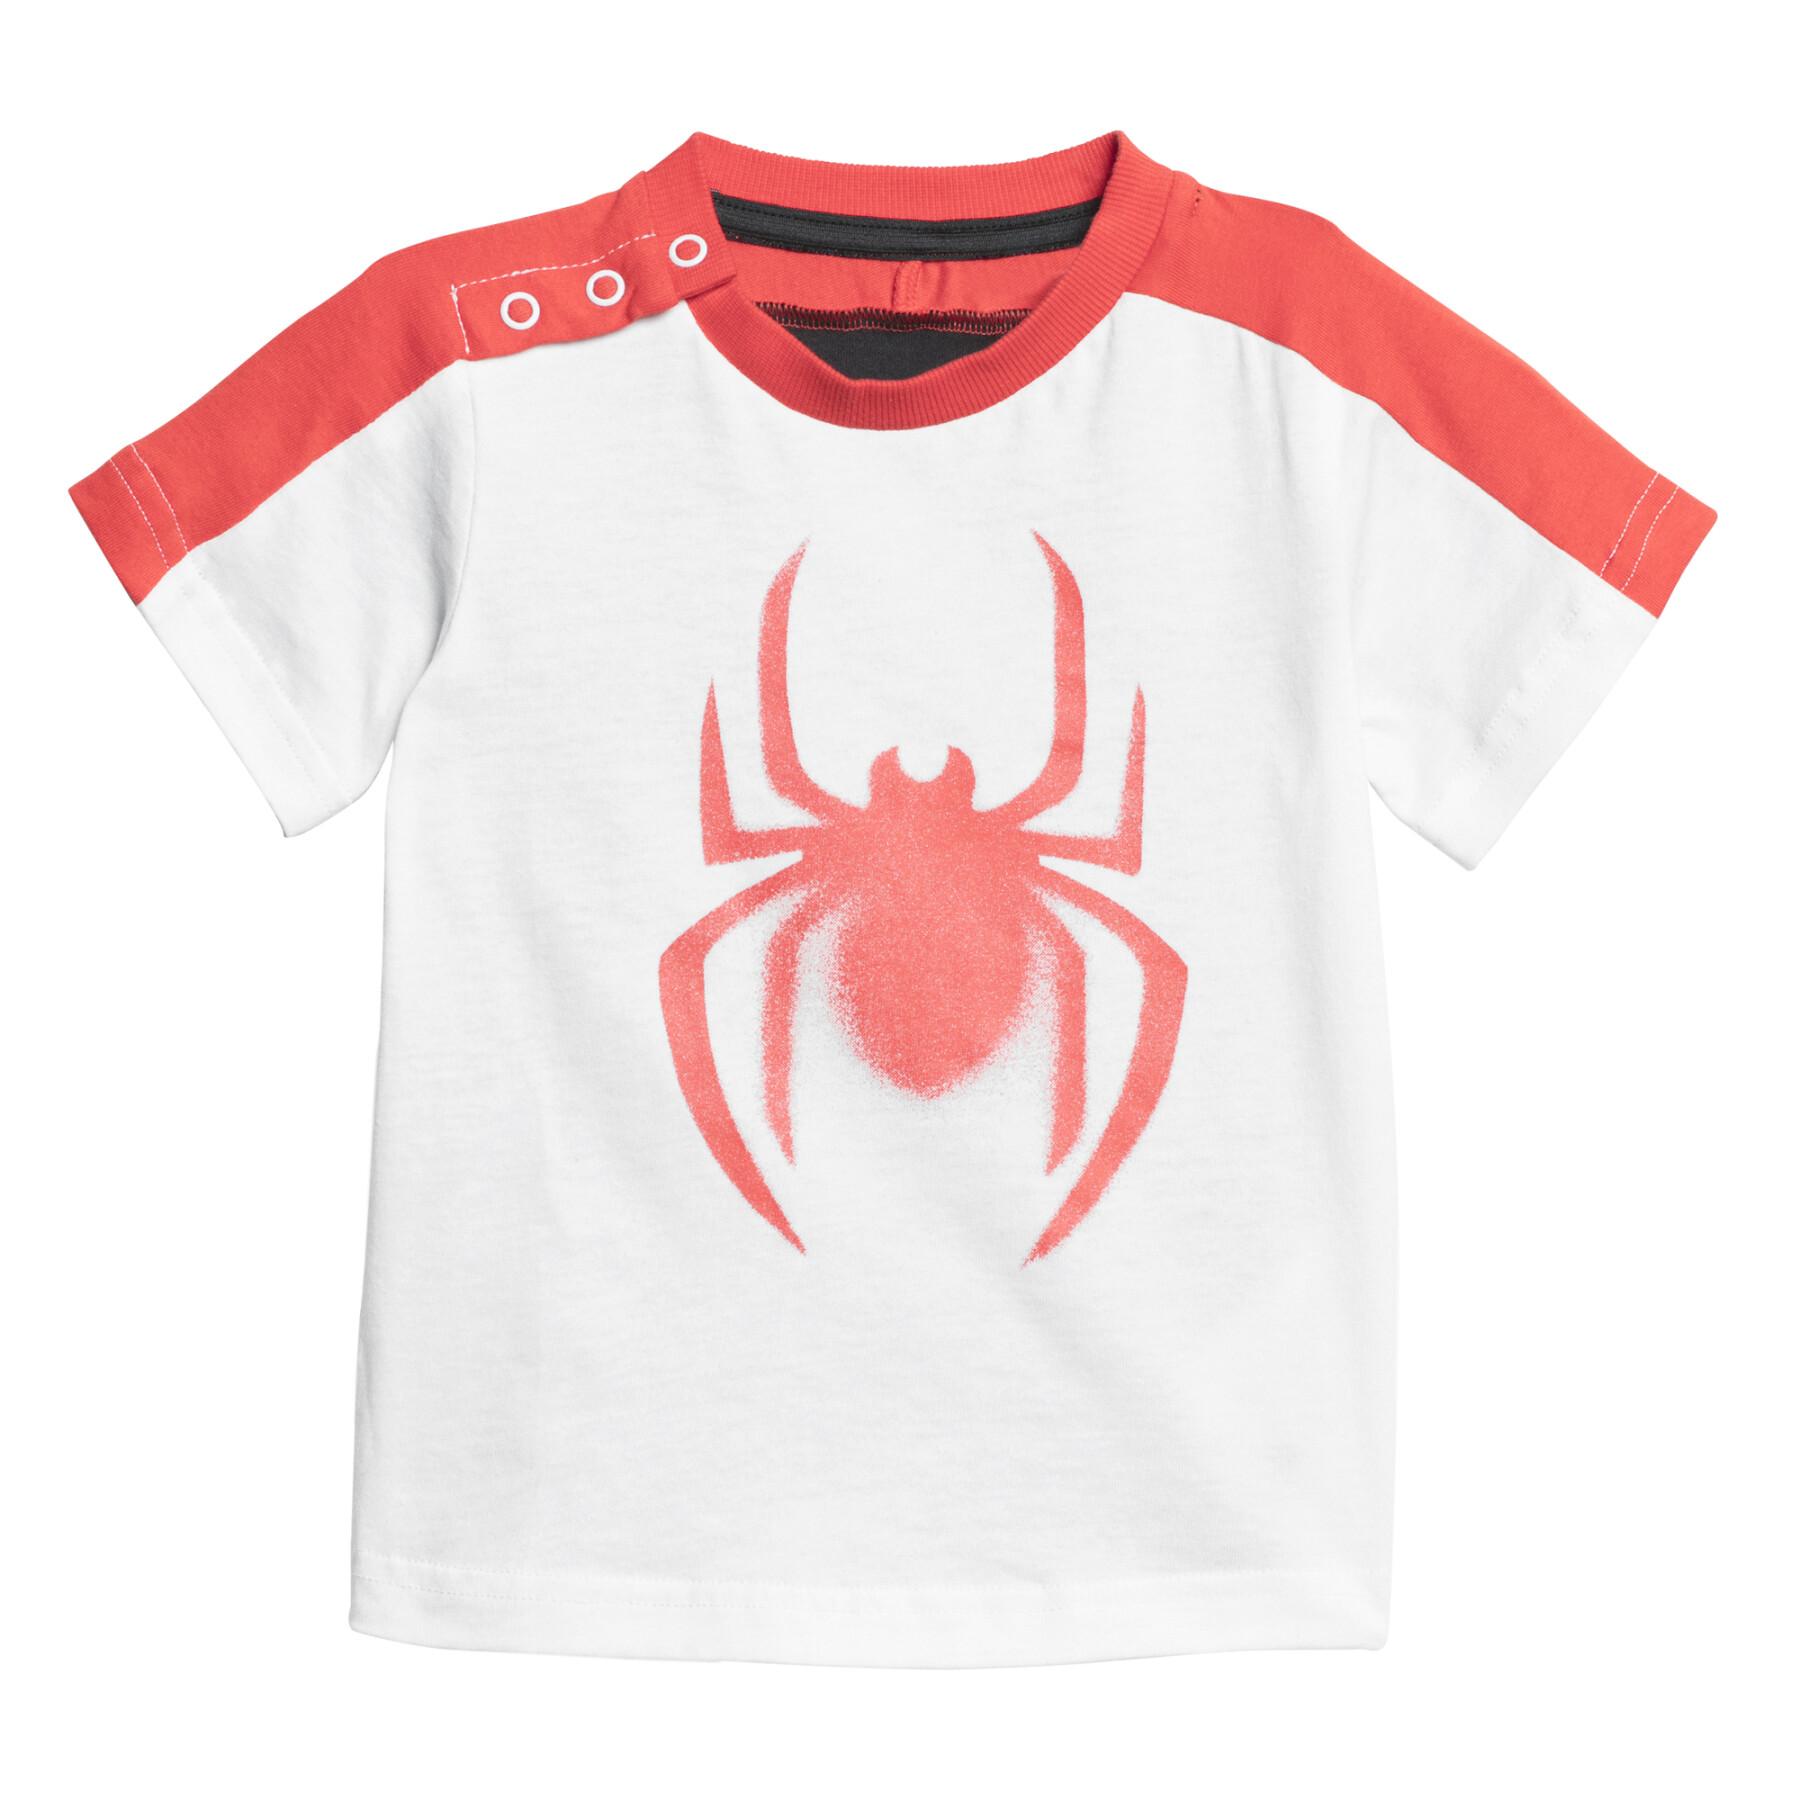 Zestaw dziecięcy adidas Marvel Spider-Man Summer